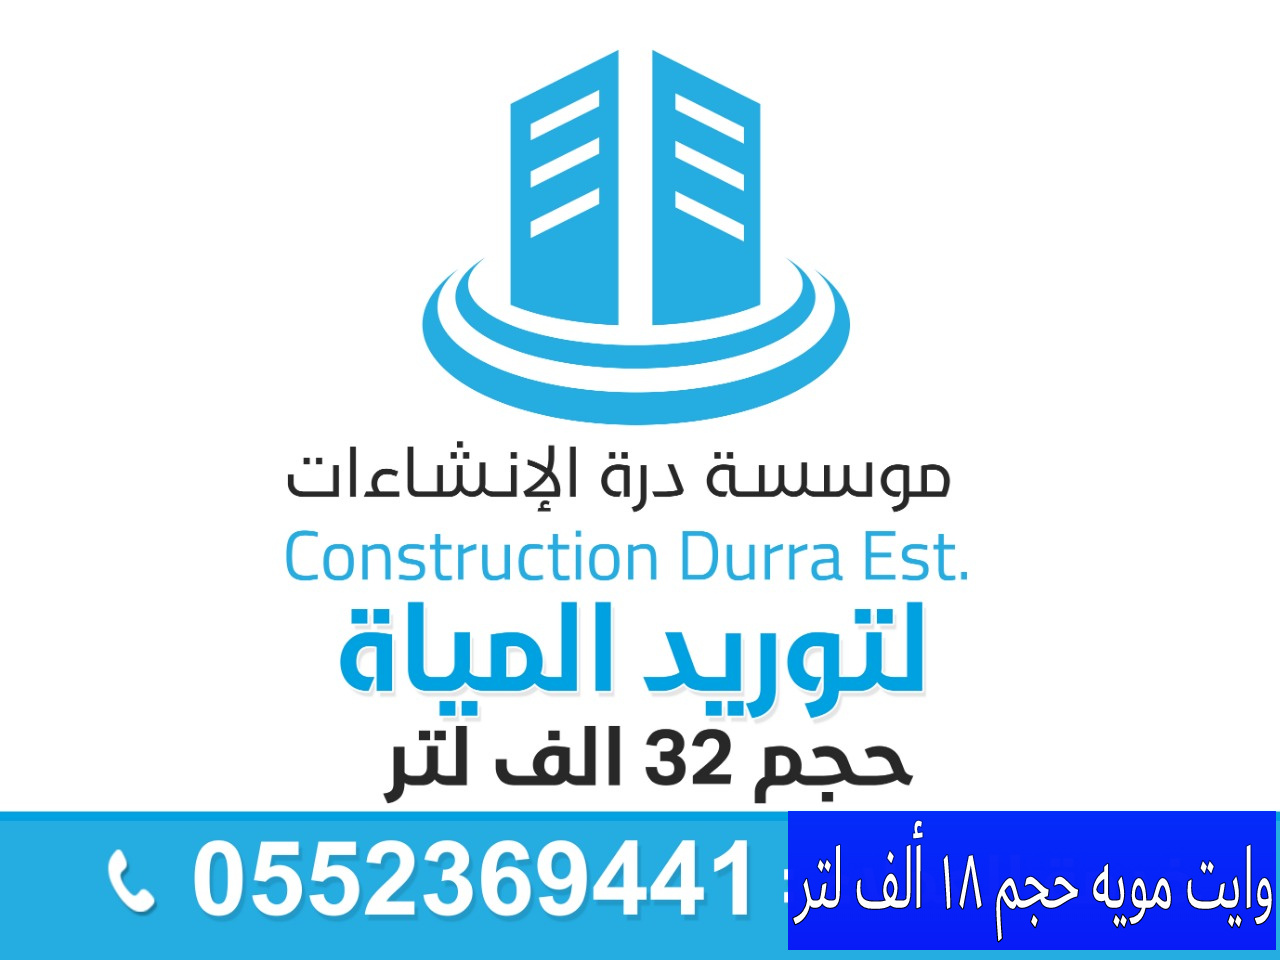 كشف تسربات المياه في الرياض وتبوك 0580221093 وايت مويه في الرياض /مؤسسة درة الإنشاءات  P_1352k8fub0